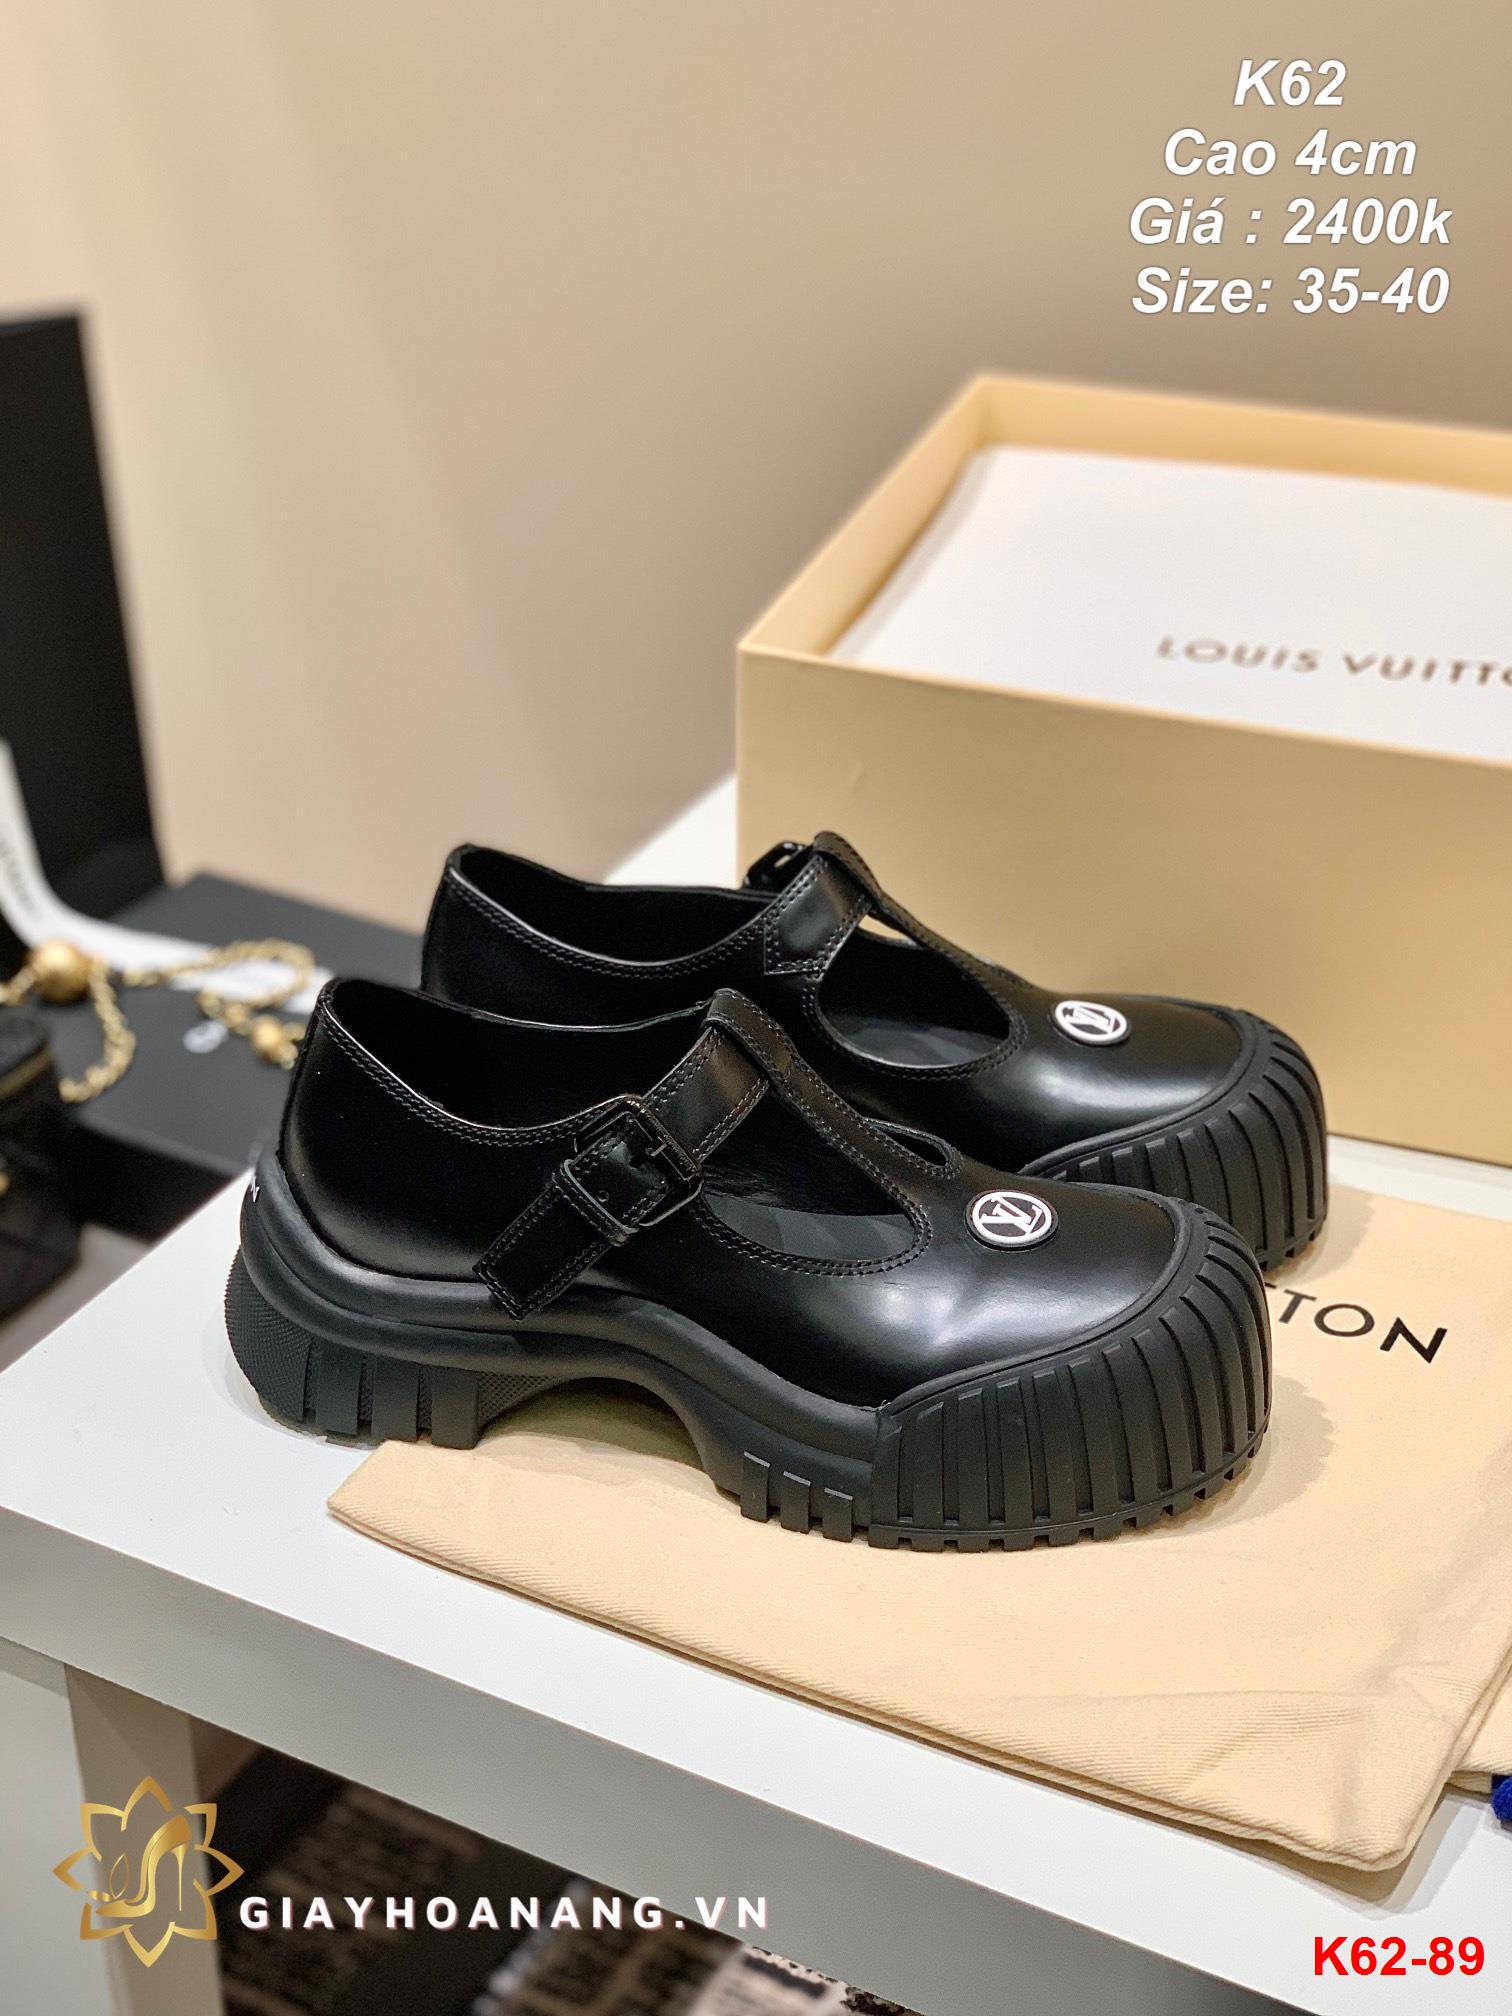 K62-89 Louis Vuitton giày cao 4cm siêu cấp